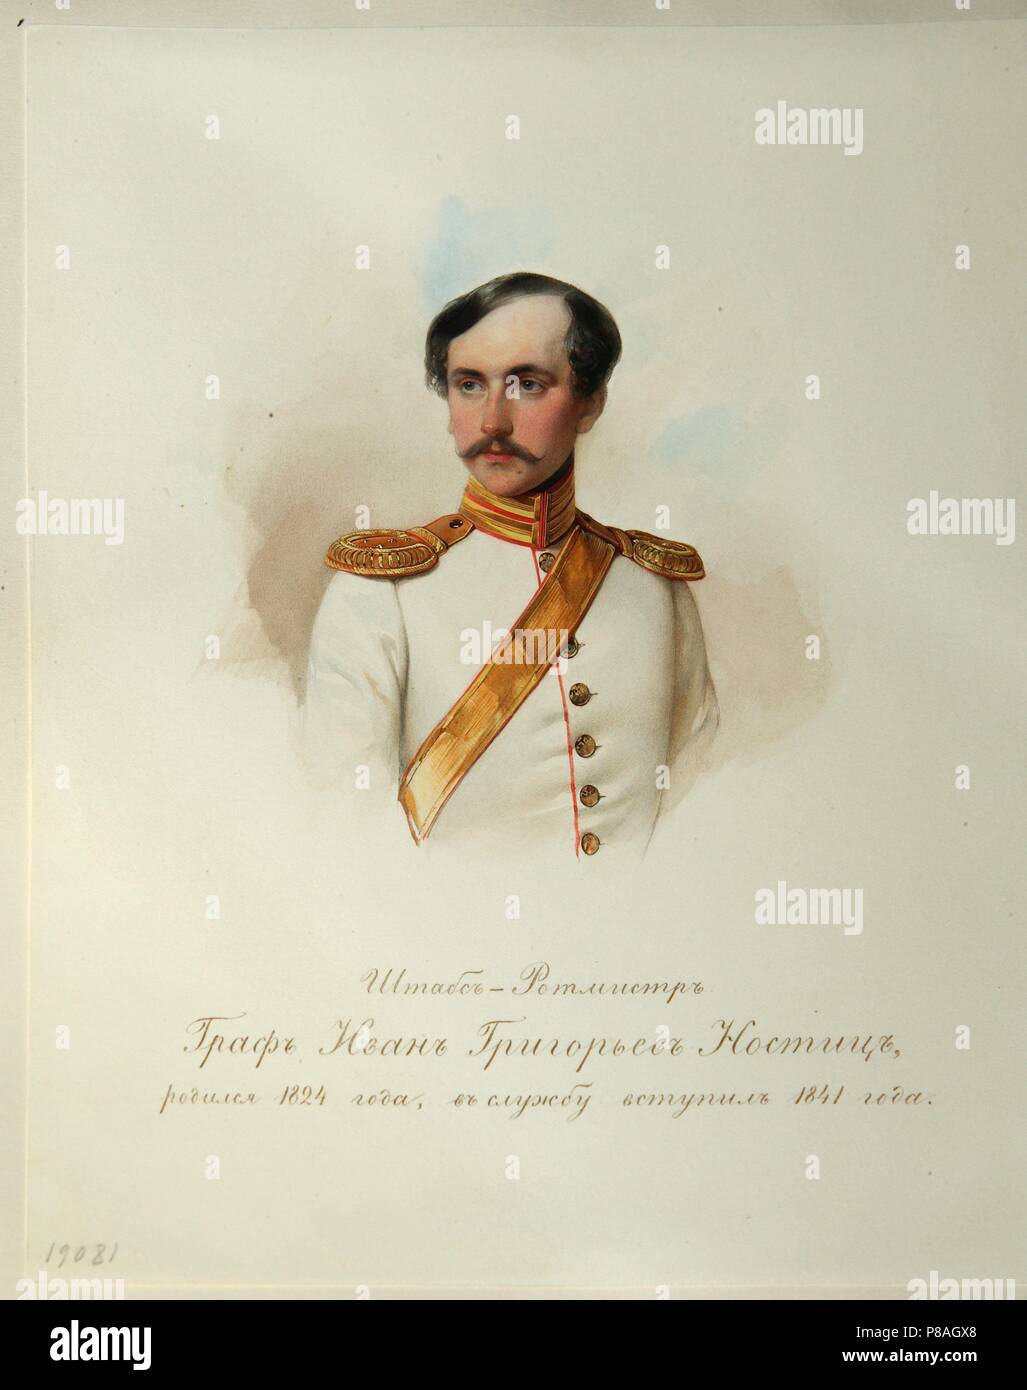 Retrato del conde Ivan Grigoryevich von Nostitz (1824-1905) (desde el álbum del caballo Imperial guardias). Museo: Instituto de Literatura Rusa (Pushkin-House IRLI), San Petersburgo. Foto de stock